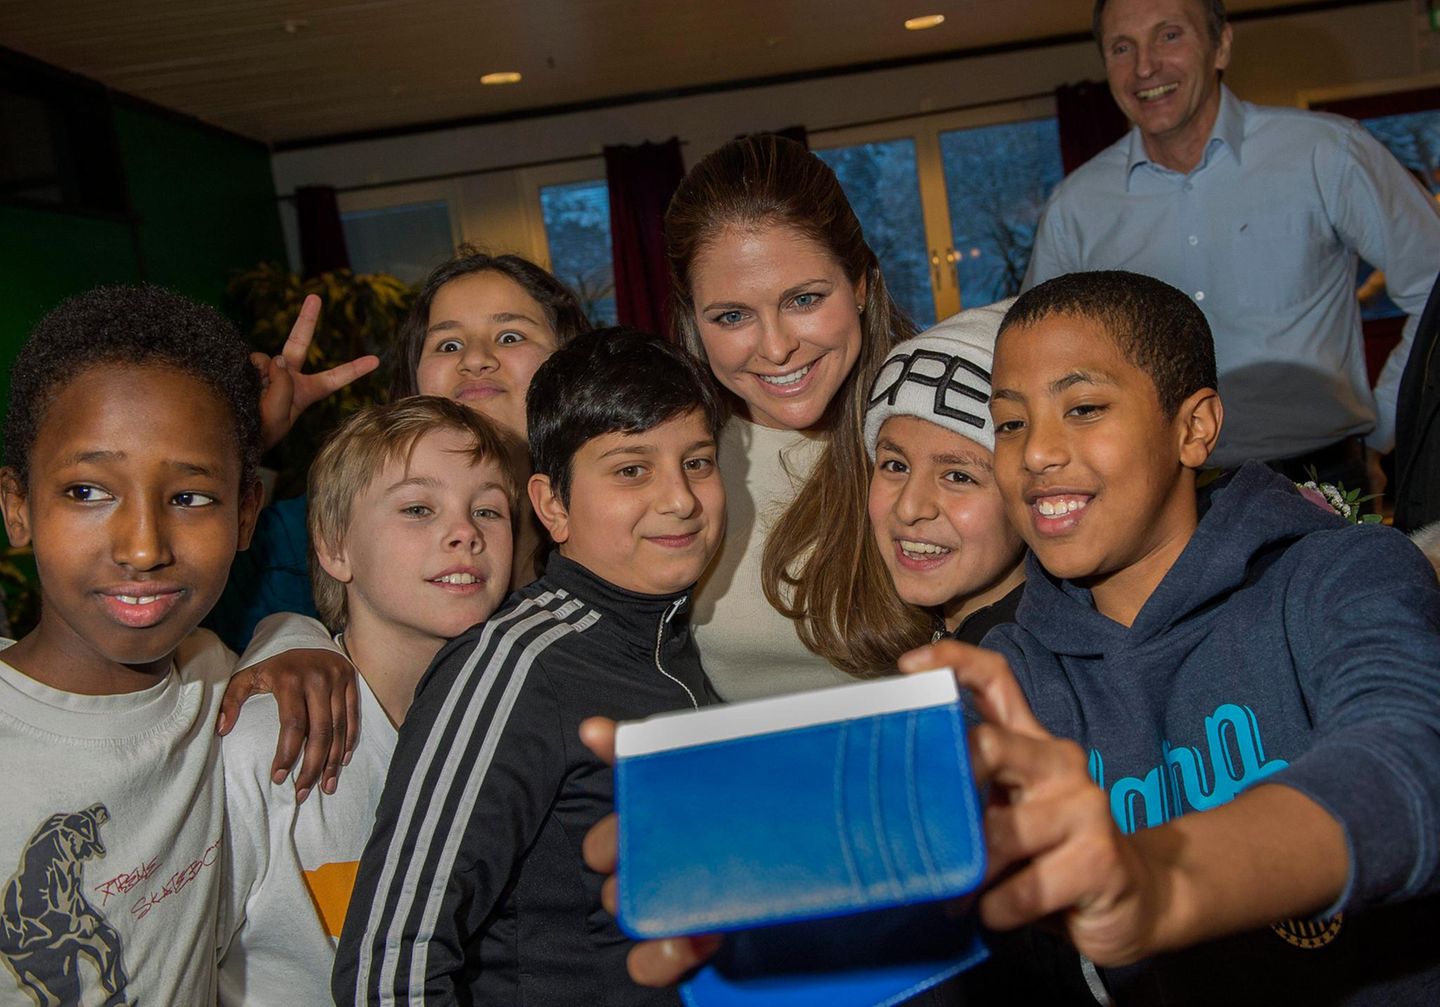 Prinzessin Madeleine macht mit bei einem Gruppen-Selfie im Jugendzentrum in Andersbergs.